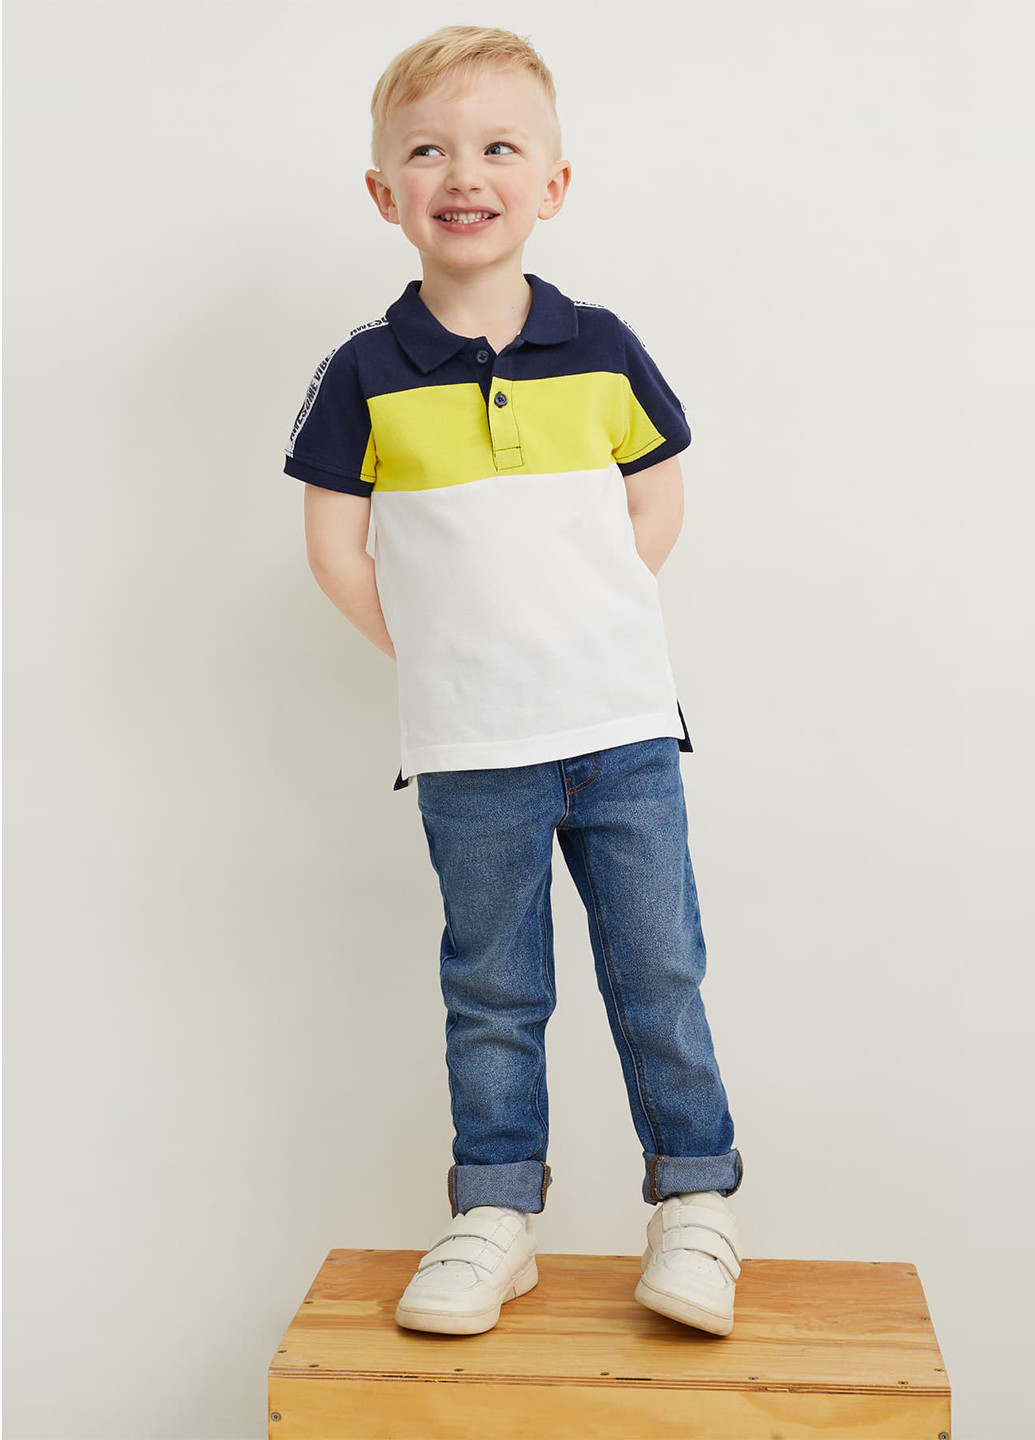 Цветная детская футболка-футболка (2 шт.) для мальчика C&A с надписью